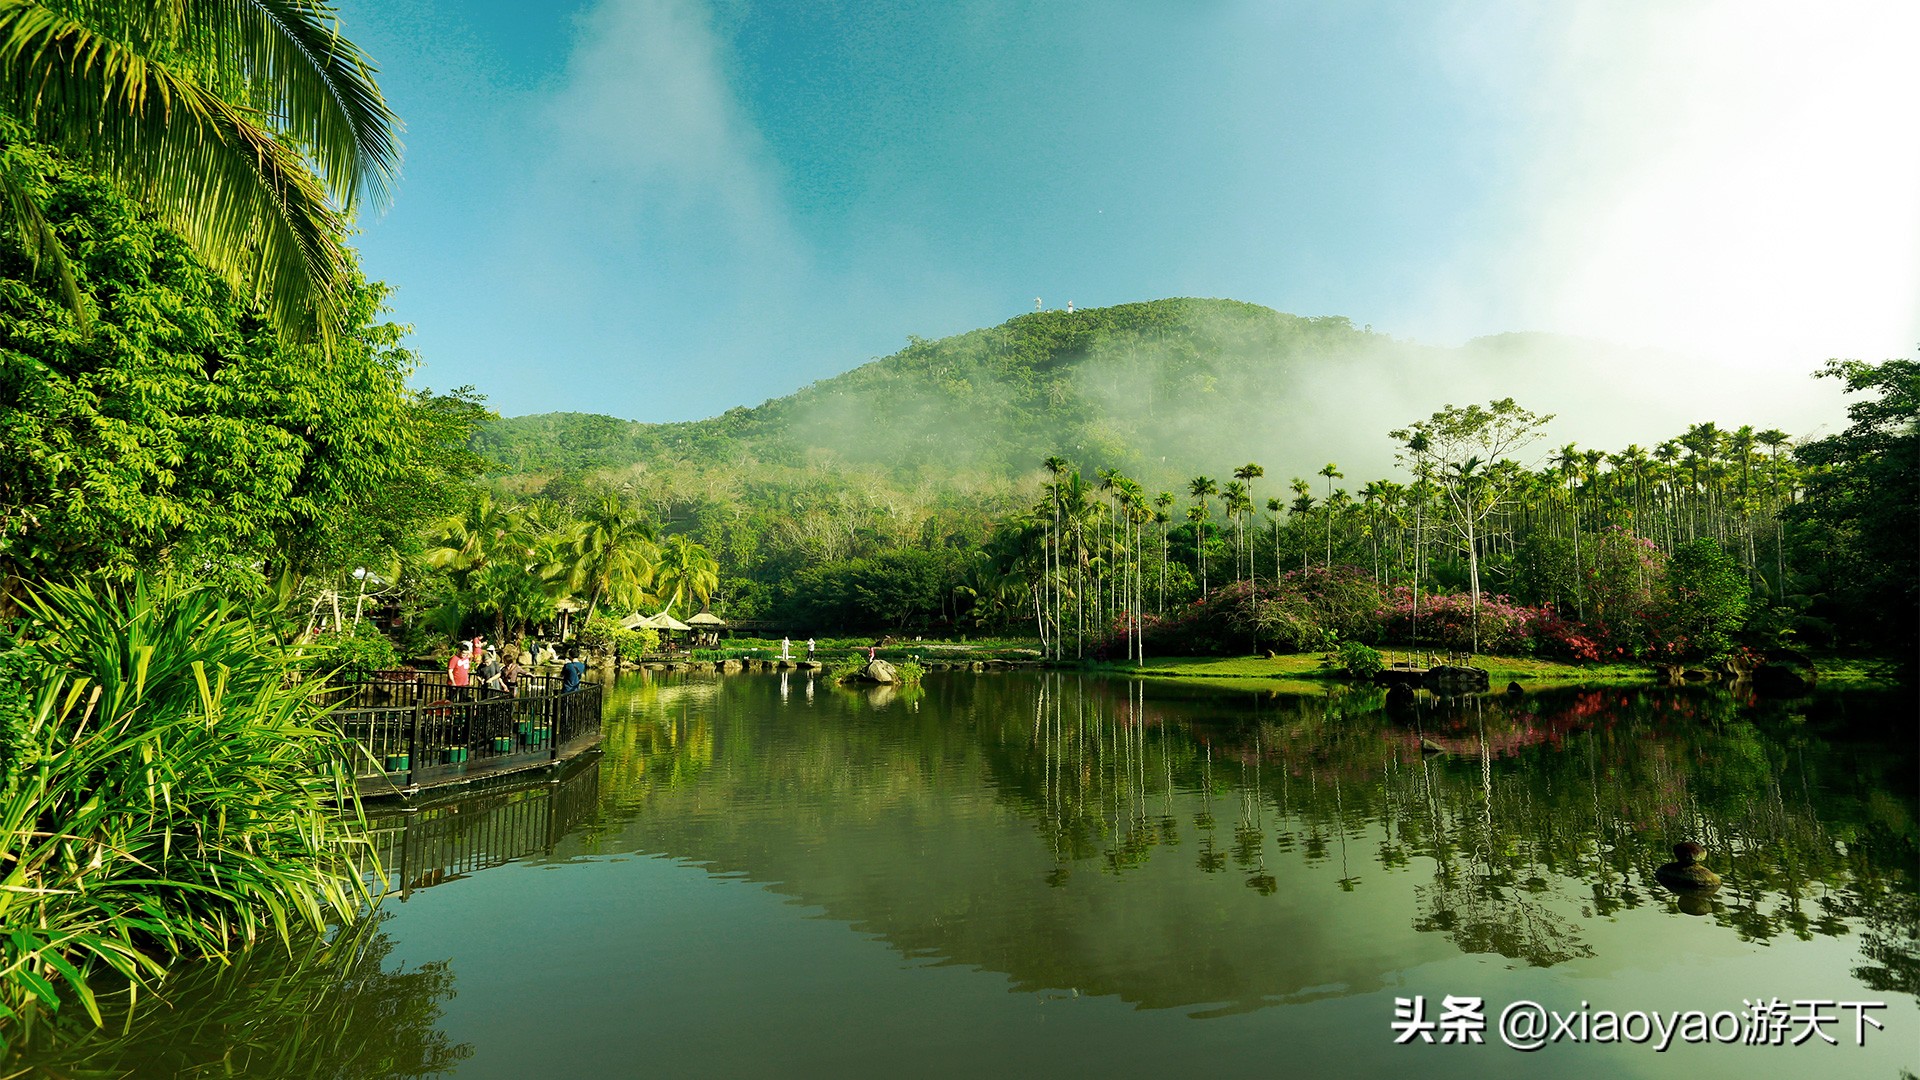 呀诺达雨林文化旅游区位于海南省保亭黎族苗族自治县三道镇,是一处集